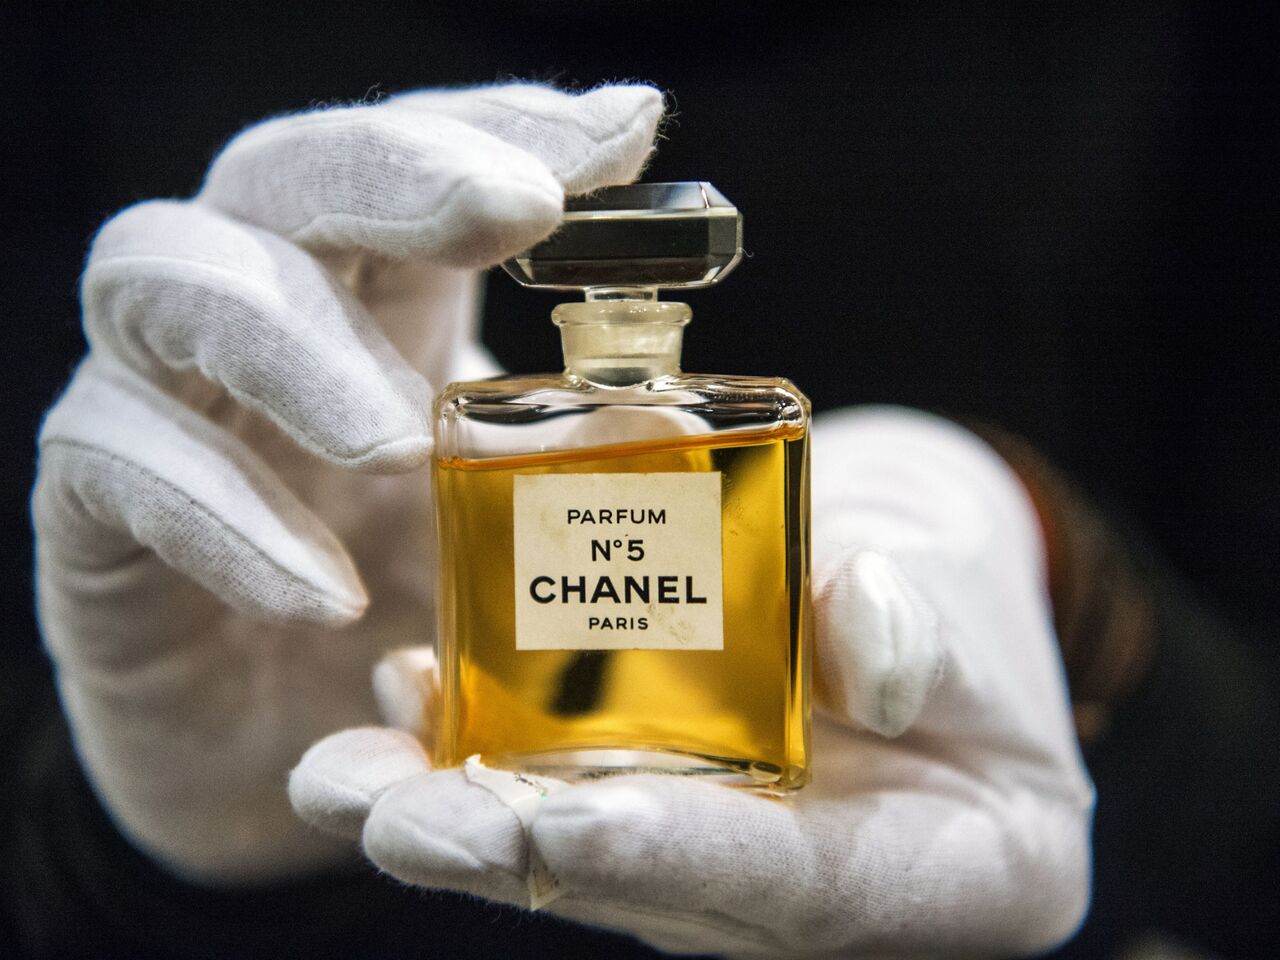 Chanel №5 cumple 100 años: curiosidades sobre el perfume más